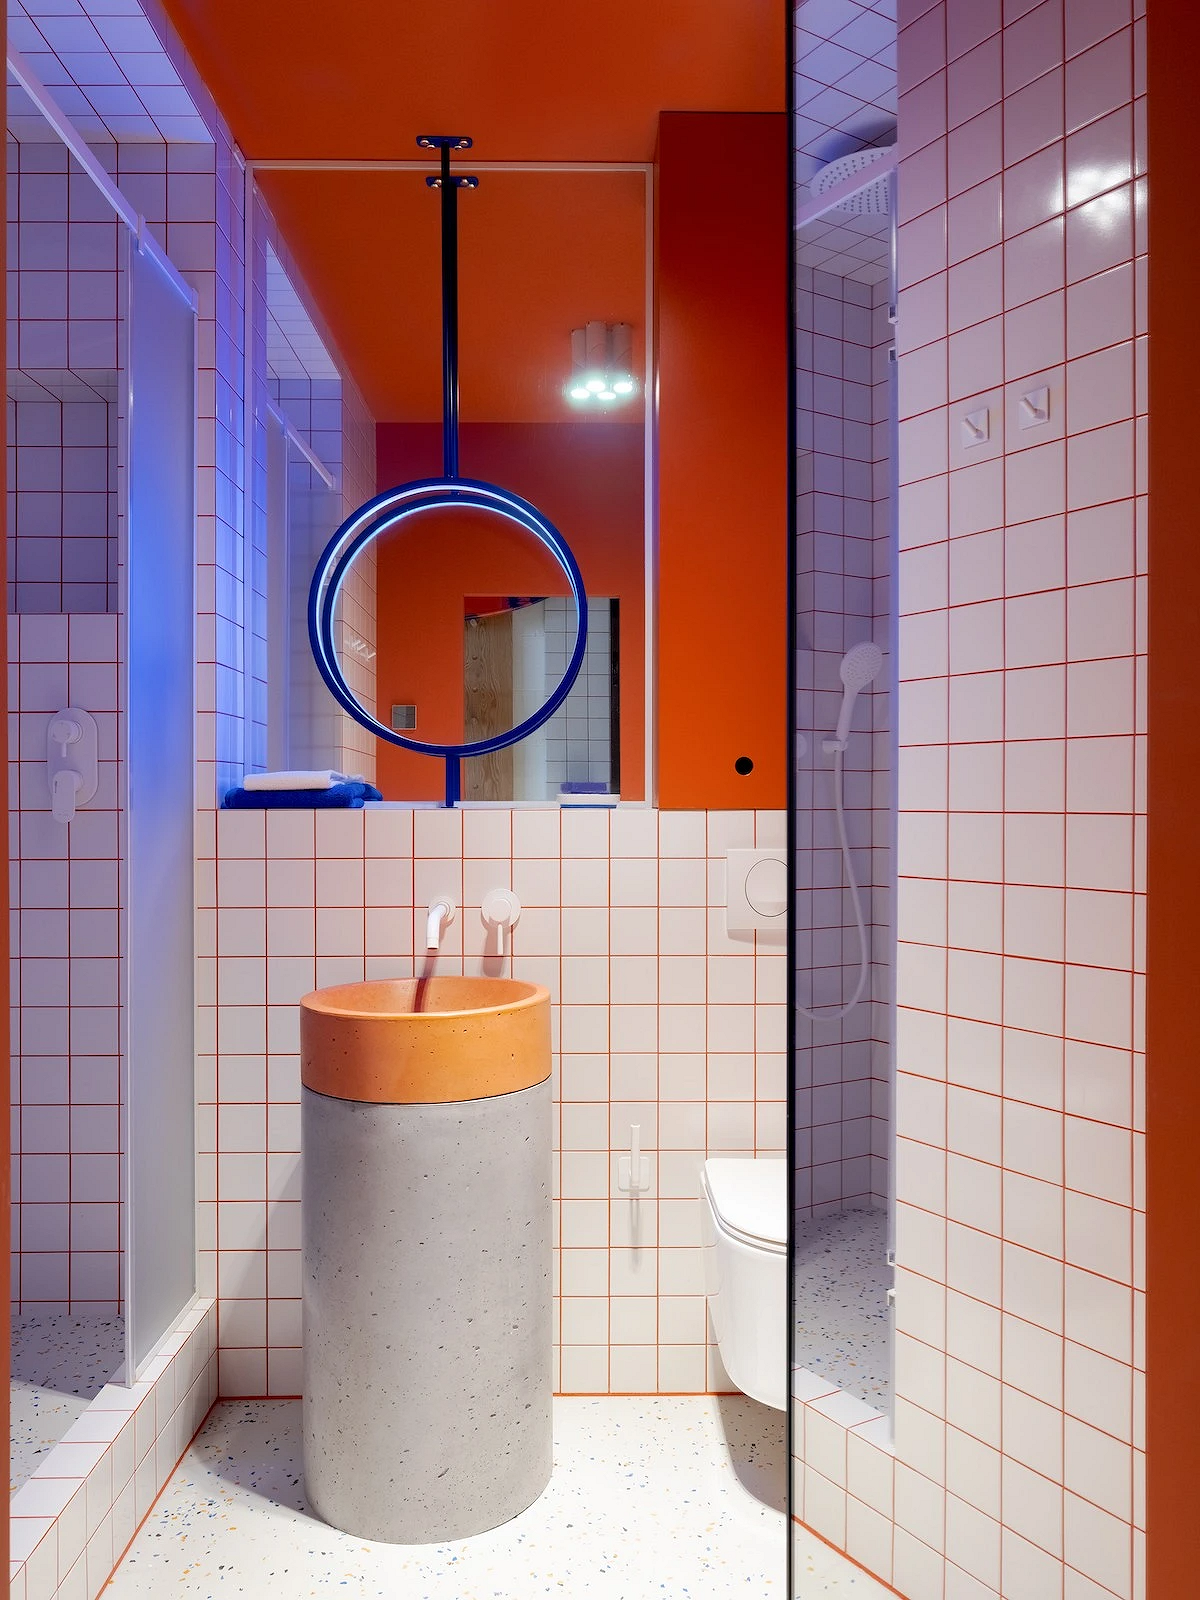 9 необычных решений для ванной комнаты из проектов дизайнеров13